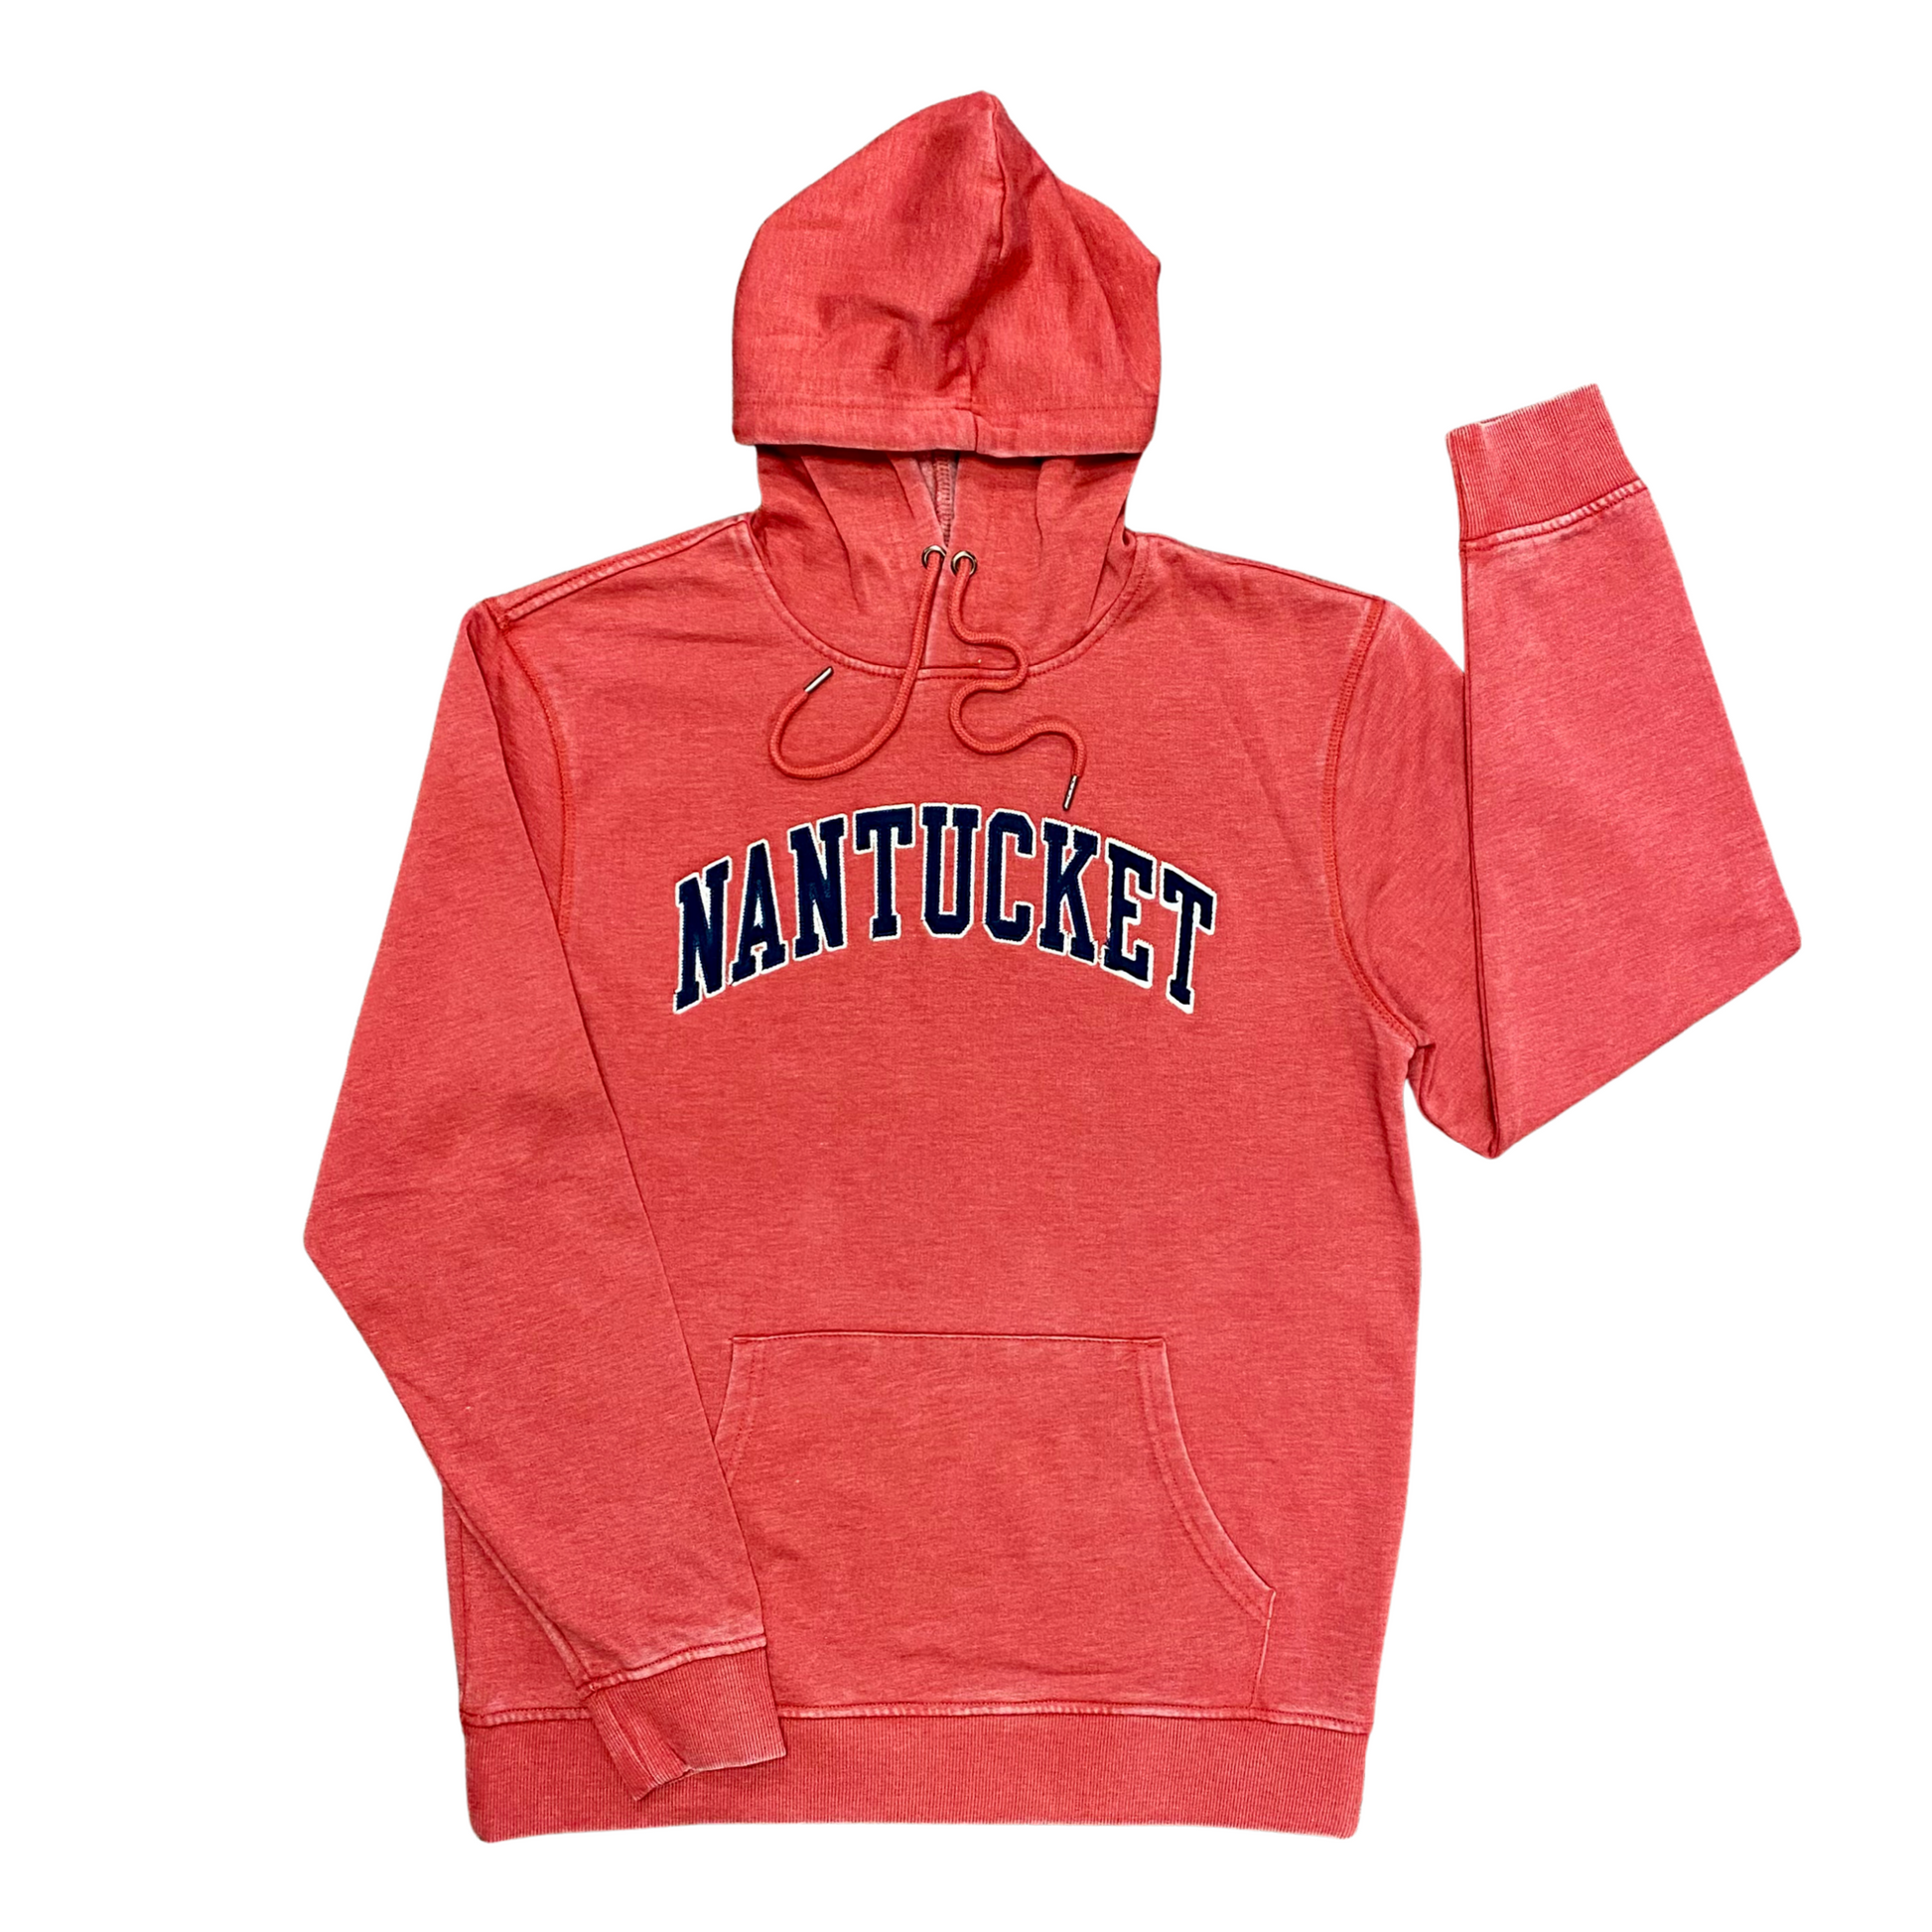 nantucket vintage worn hoodie